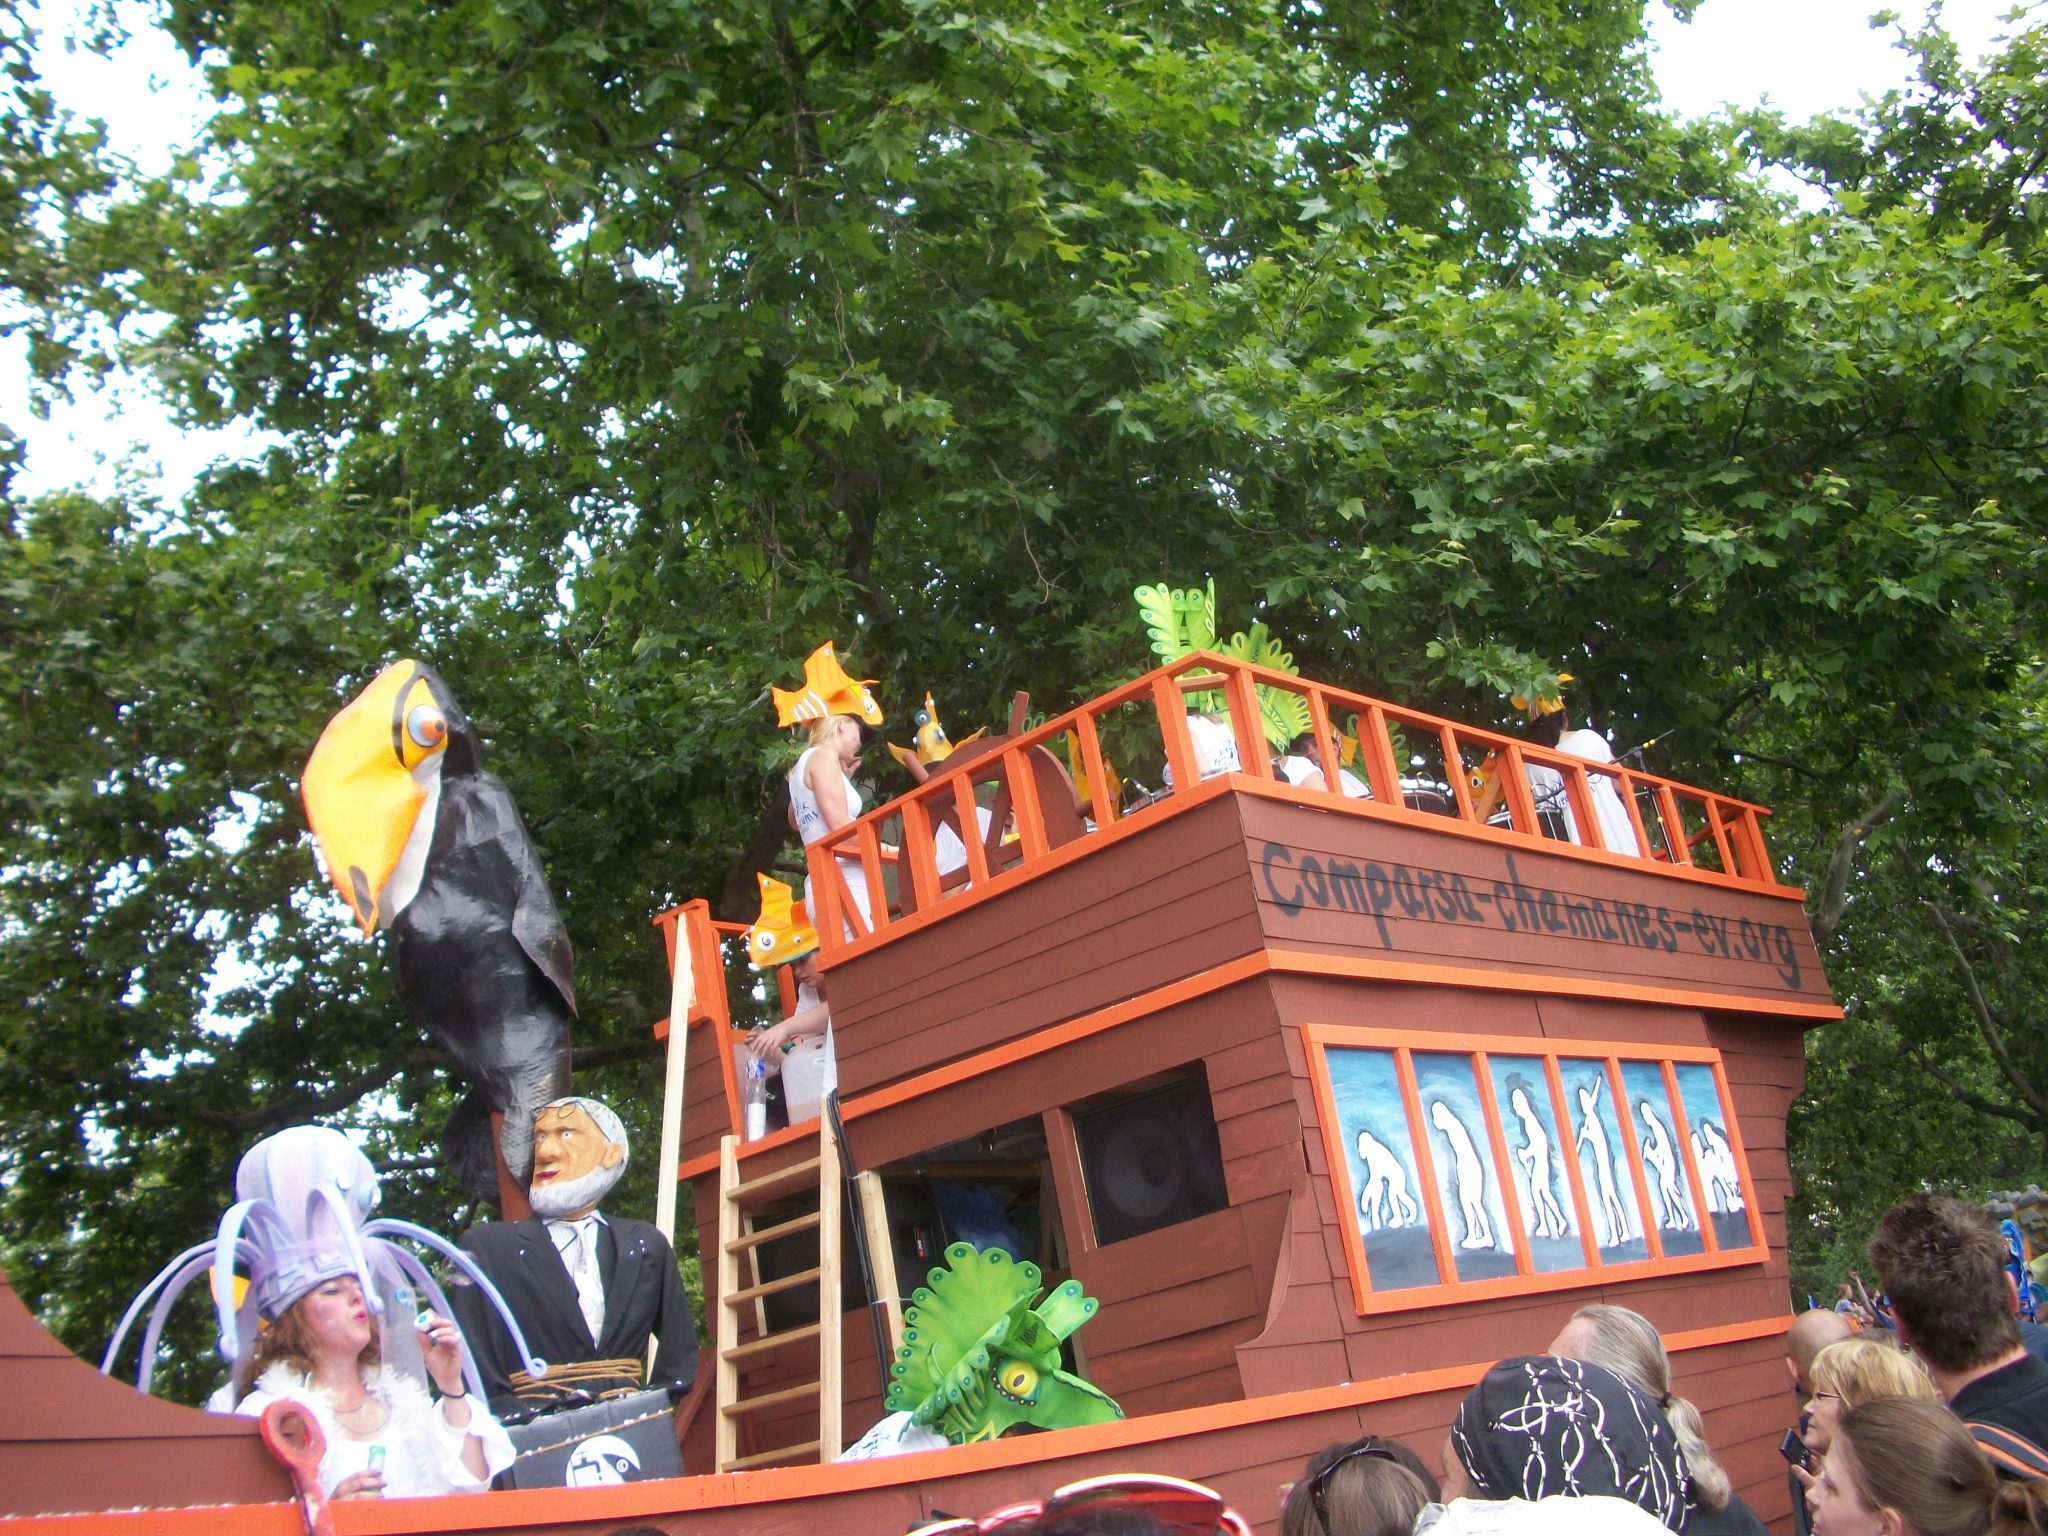 Berlin Carnival of Culture Richysheart Carnival in Berlin Germany